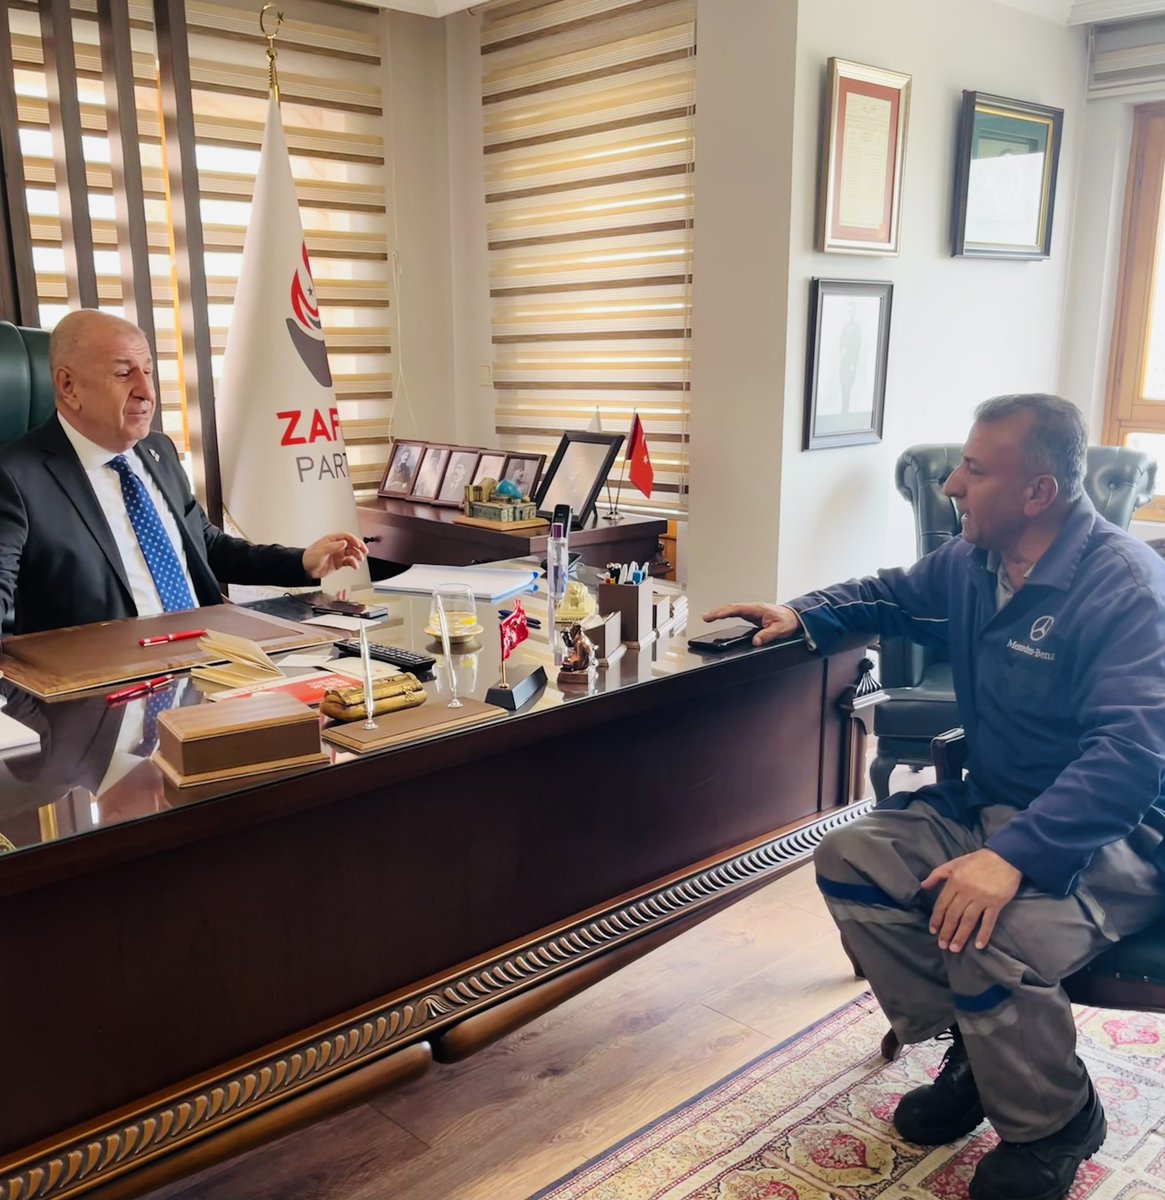 Ankara/Şaşmaz Sanayi’den değerli kardeşimiz Süleyman Yiğiter Genel Başkanımız Sn.@umitozdag’ı ziyaret etti.
Sanayi esnafının ve Türkiye’nin sorunları hakkında güzel bir sohbete tanık olduk.